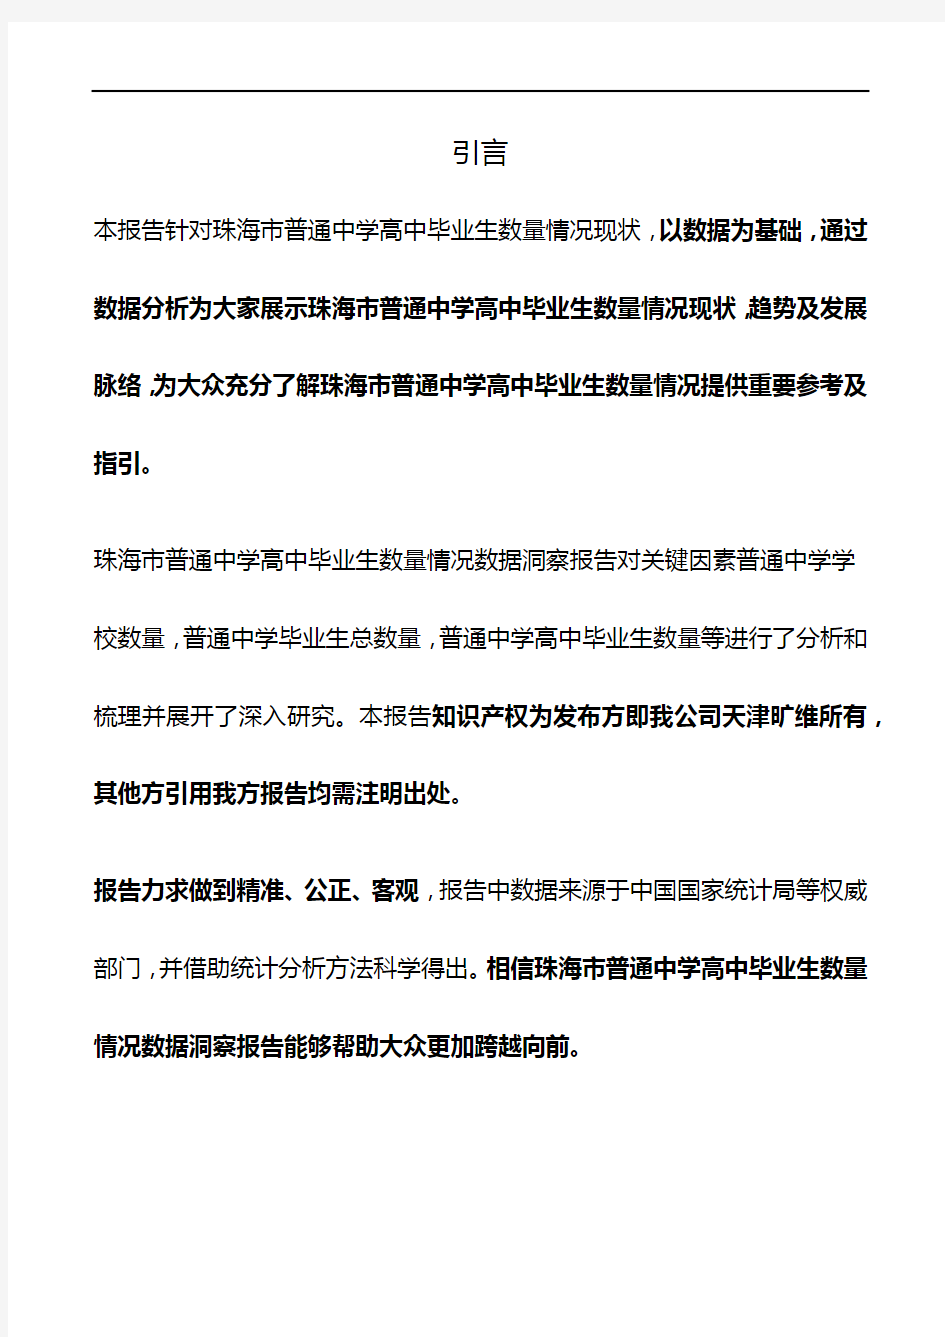 广东省珠海市普通中学高中毕业生数量情况3年数据洞察报告2020版